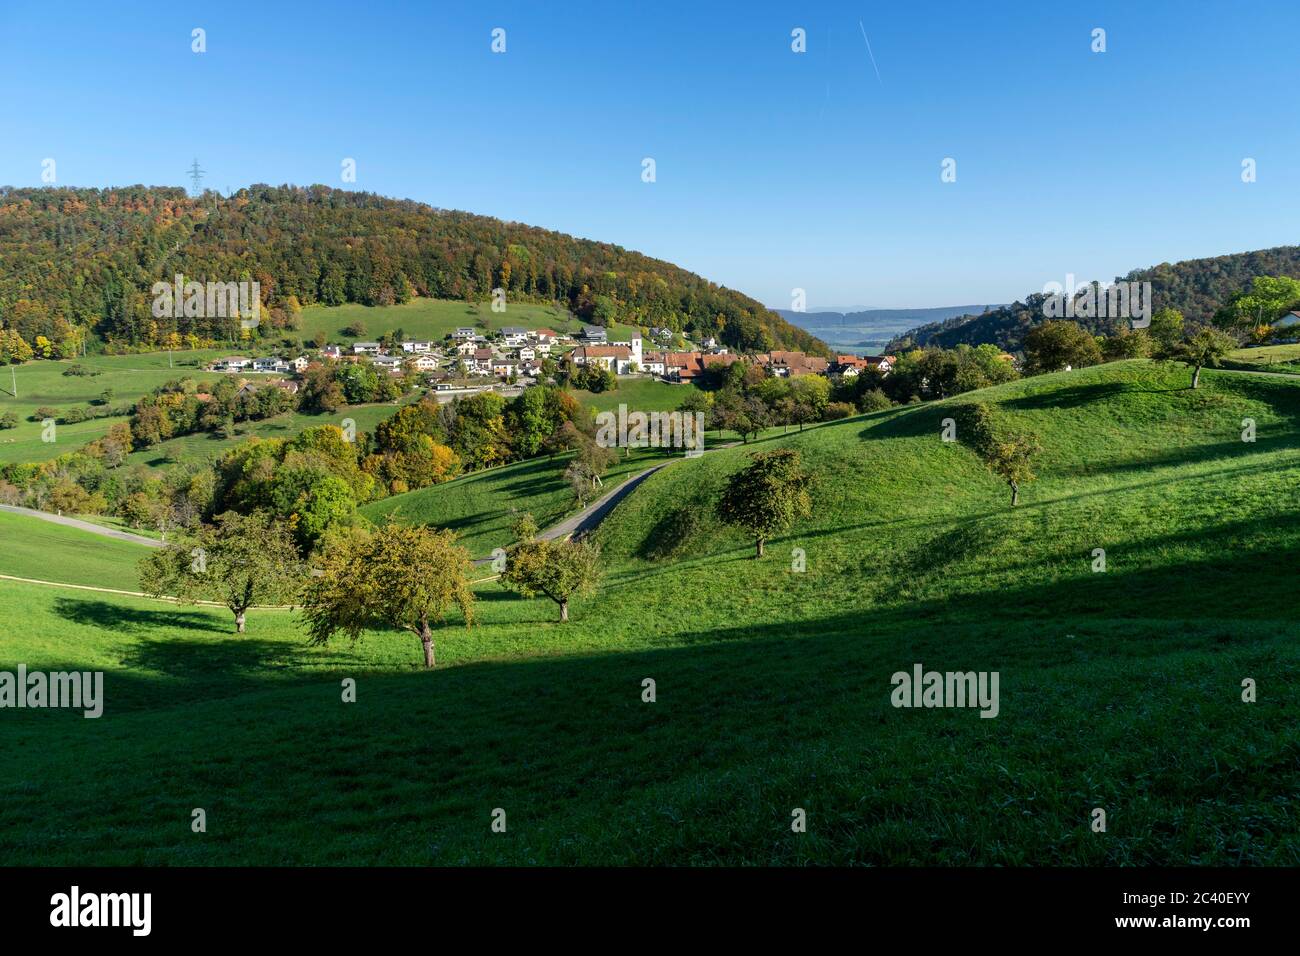 DAS Dorf Grindel im Solothurner Jura (Schwarzbubenland) mit dem Rütliberg dahinter, Kirschbäume im Vordergrund Banque D'Images